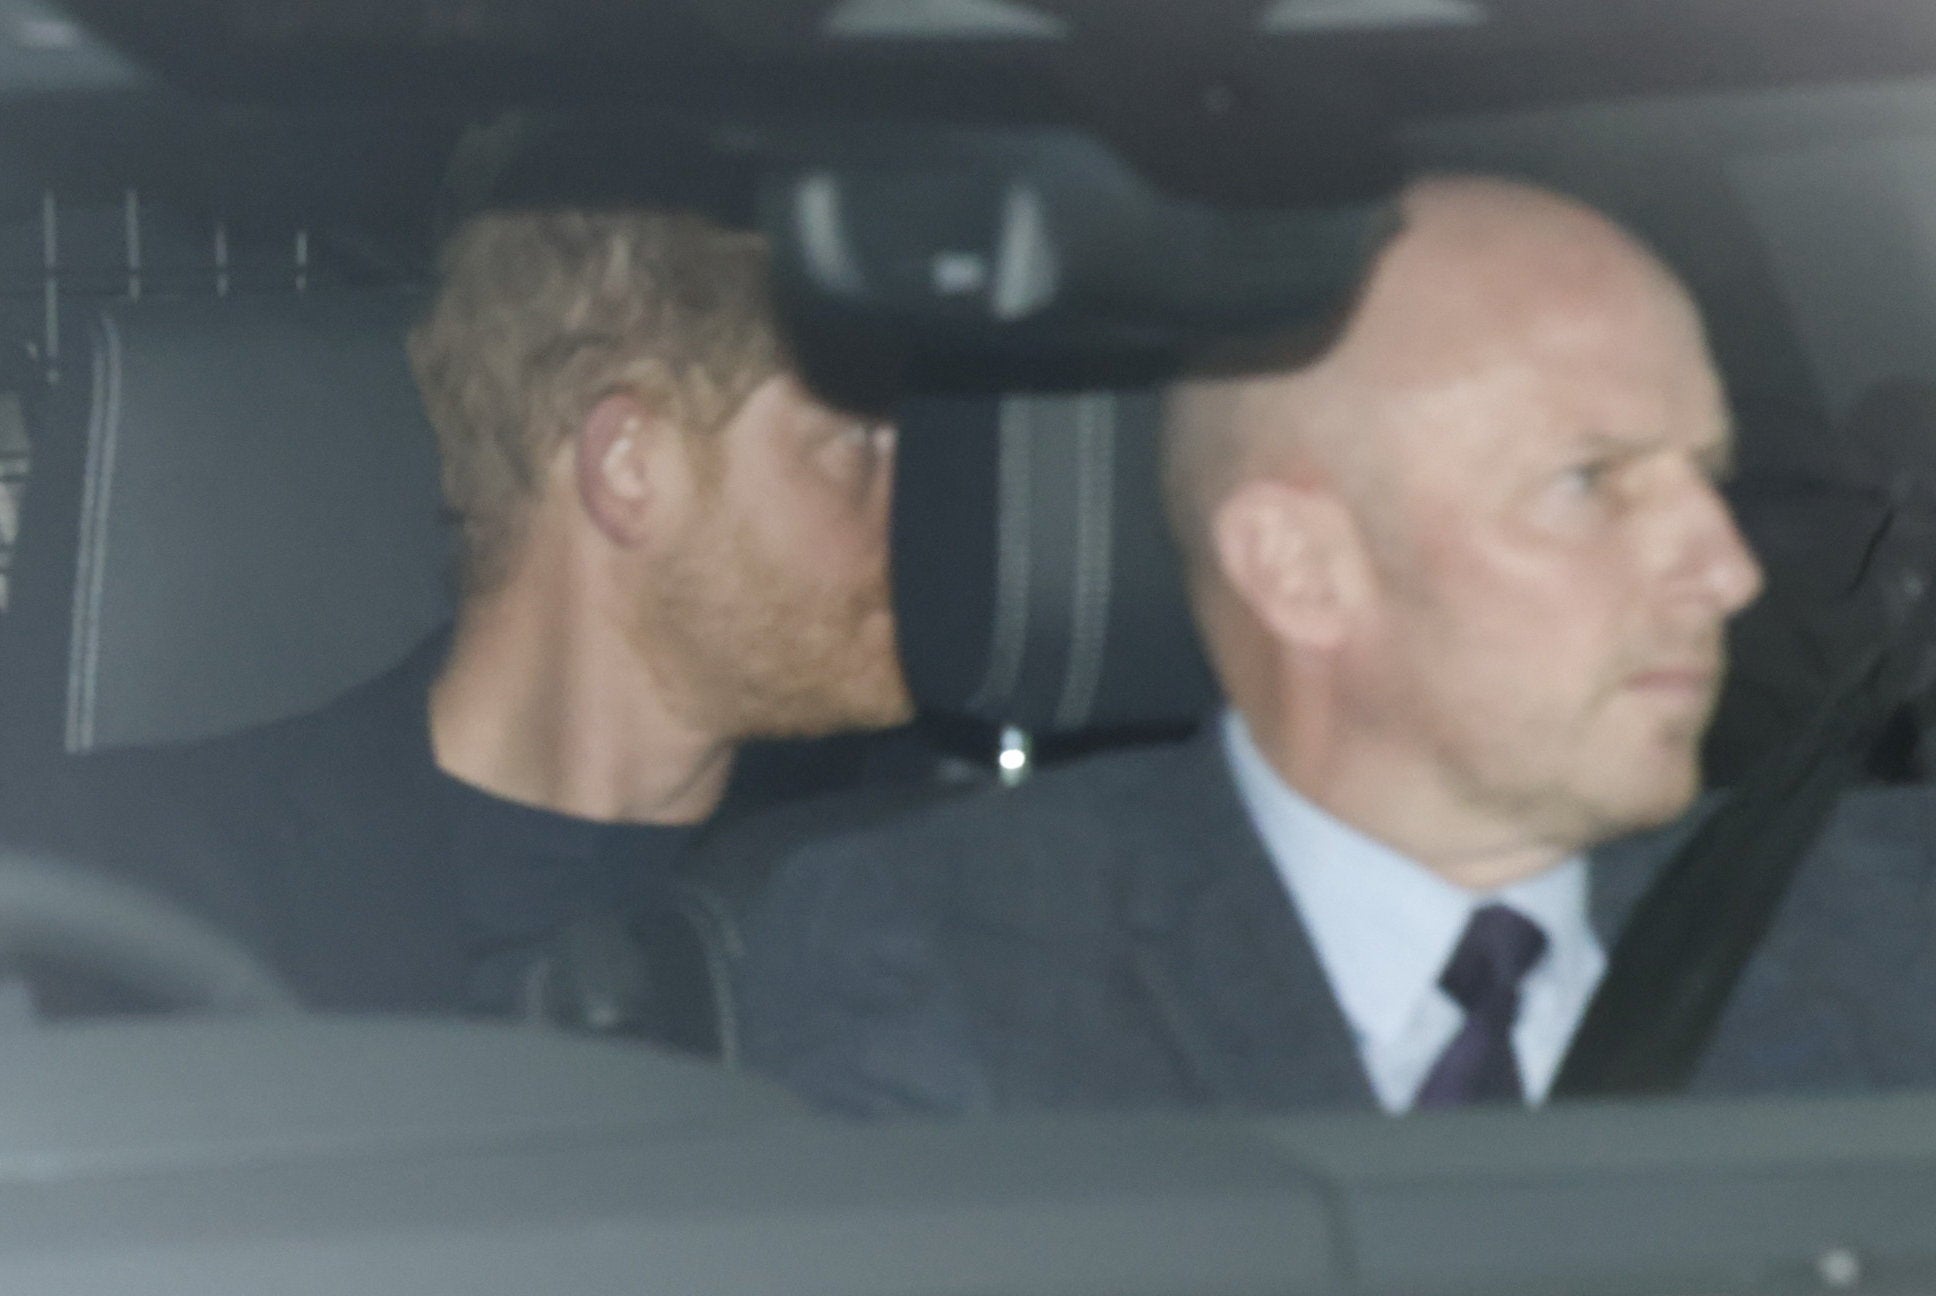 El príncipe Harry llega al Reino Unido para reunirse con su padre tras el terrible diagnóstico de cáncer del rey